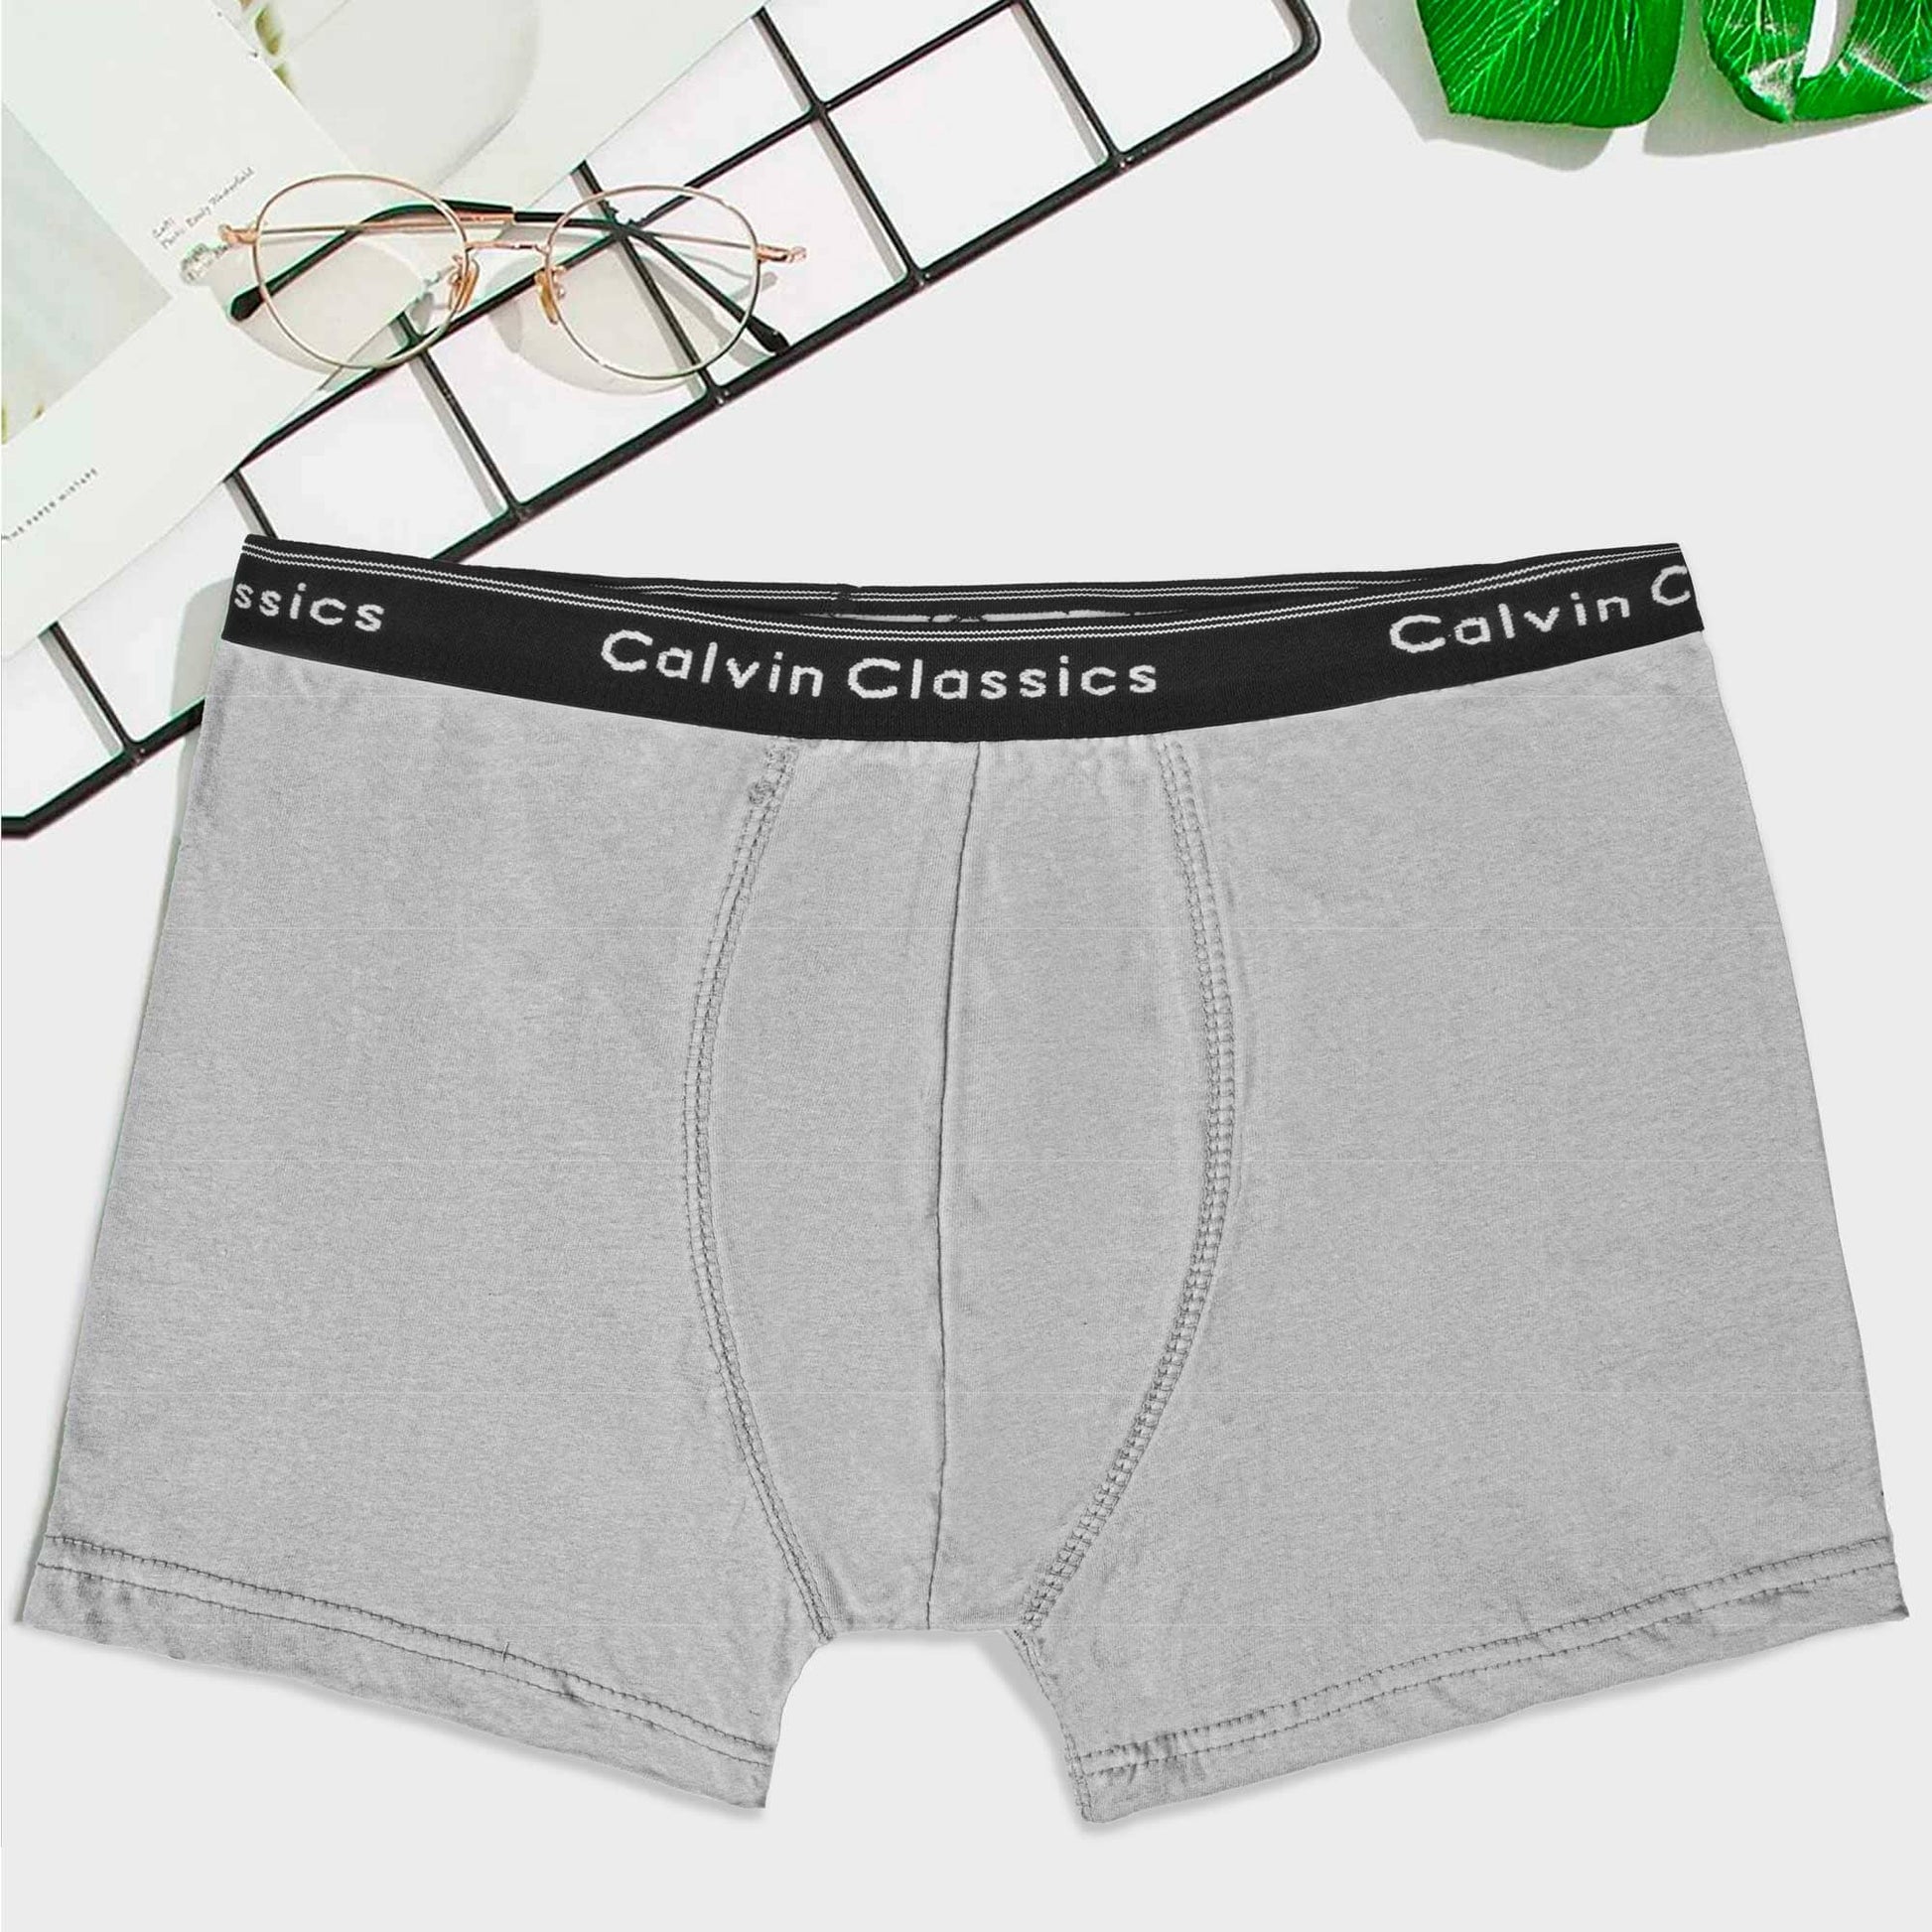 Calvin Classic Men's Boxer Shorts Men's Underwear SZK Heather Grey S 